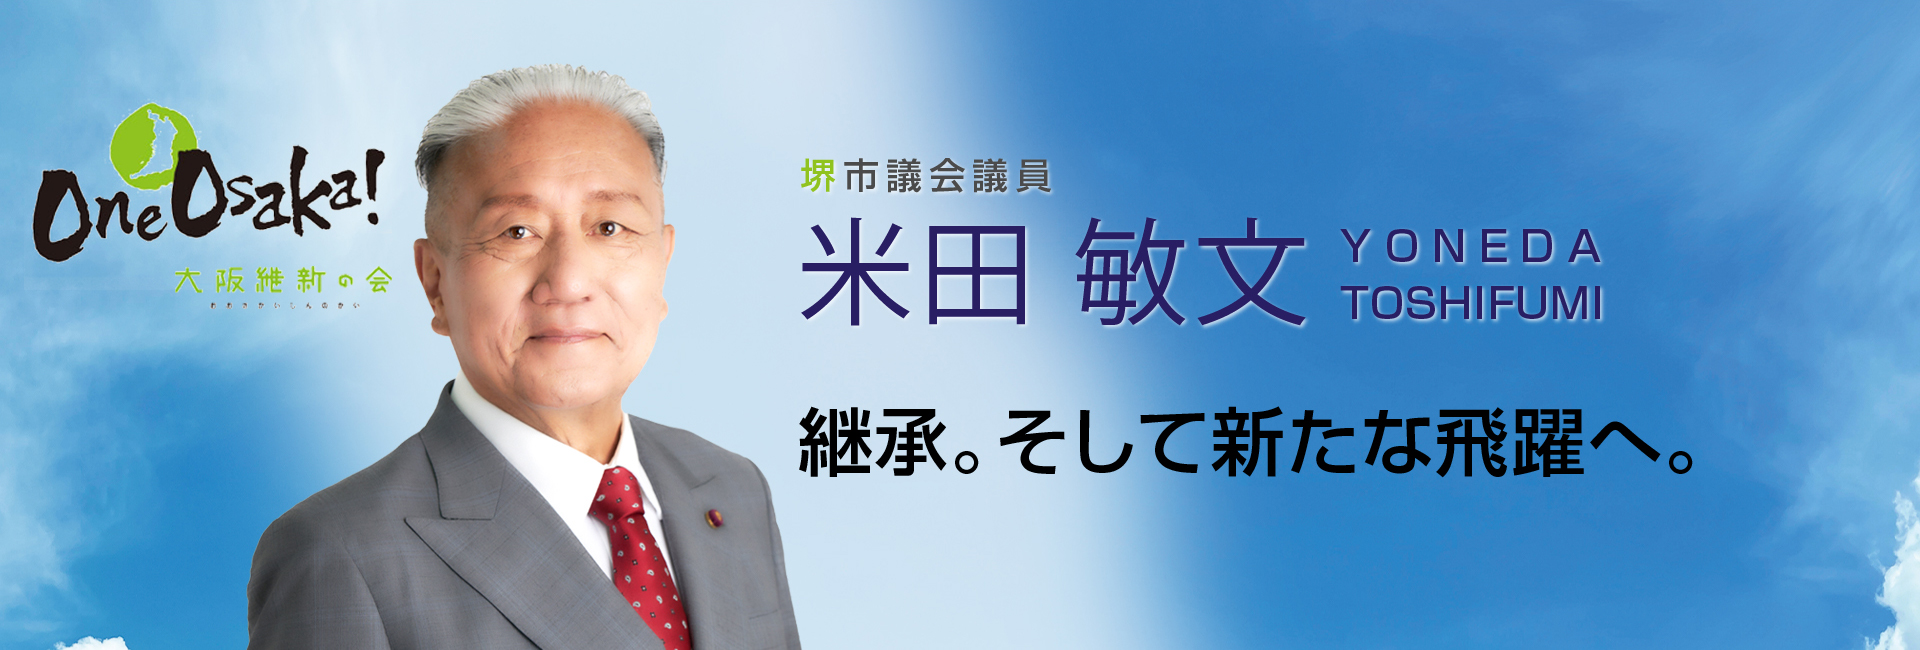 堺市議会議員 米田敏文 YONEDA TOSHIFUMI 継承。そして新たな飛躍へ。